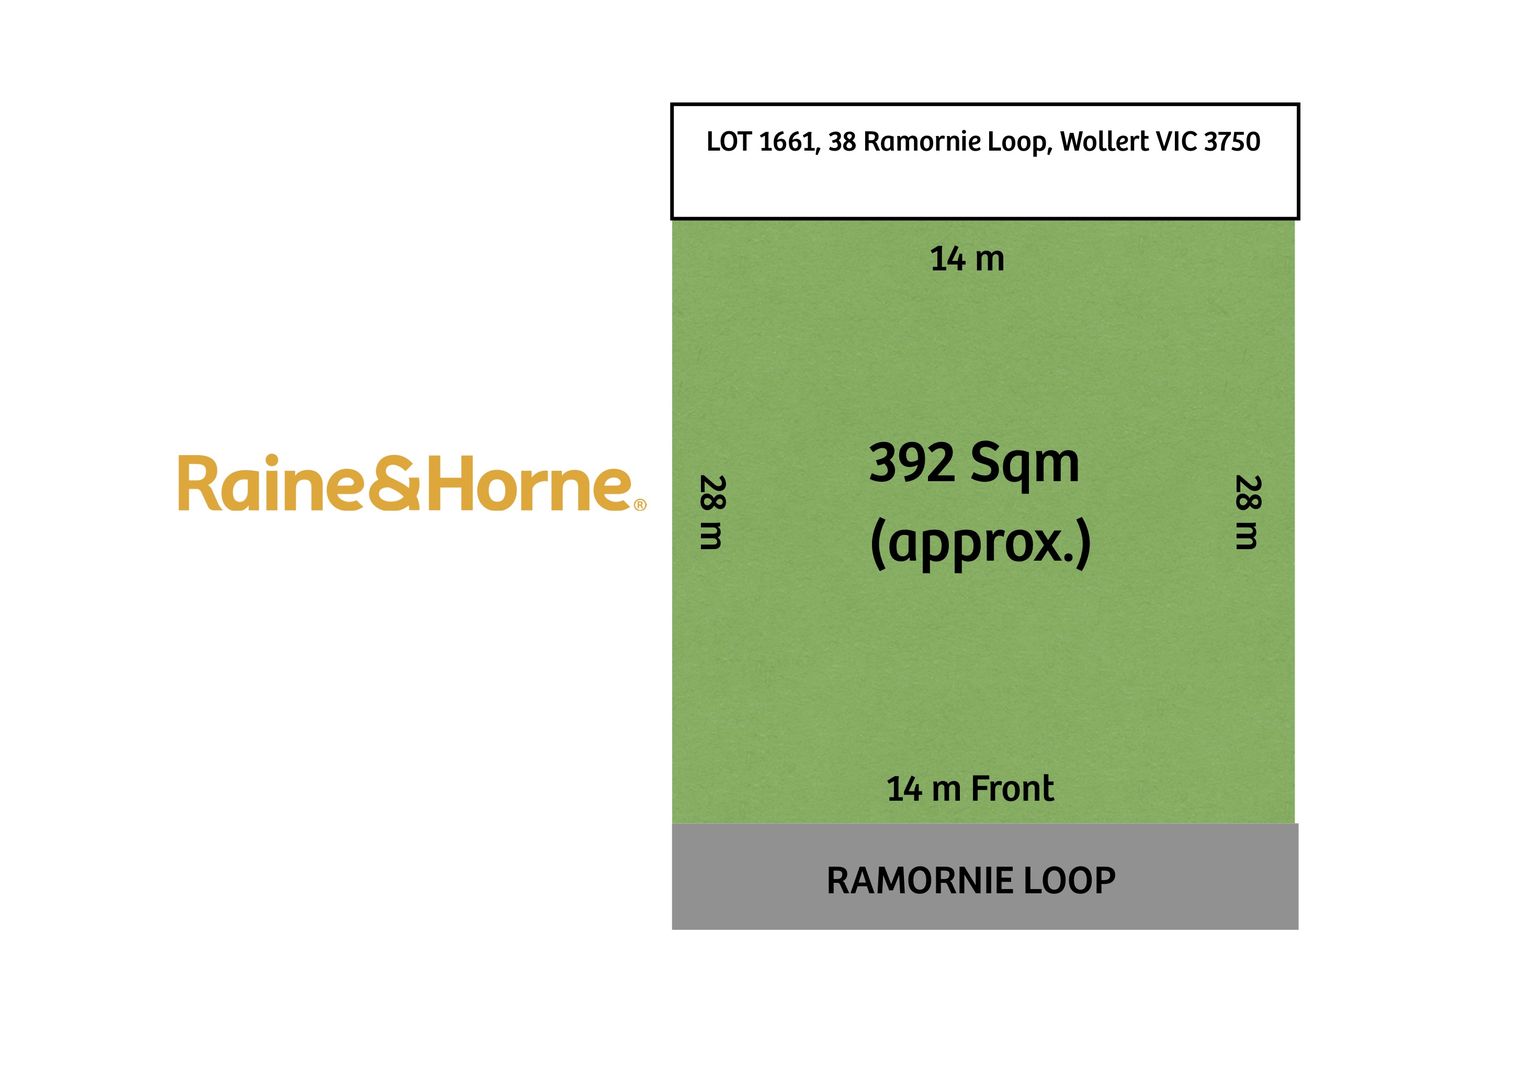 38 Ramornie Loop, Wollert VIC 3750